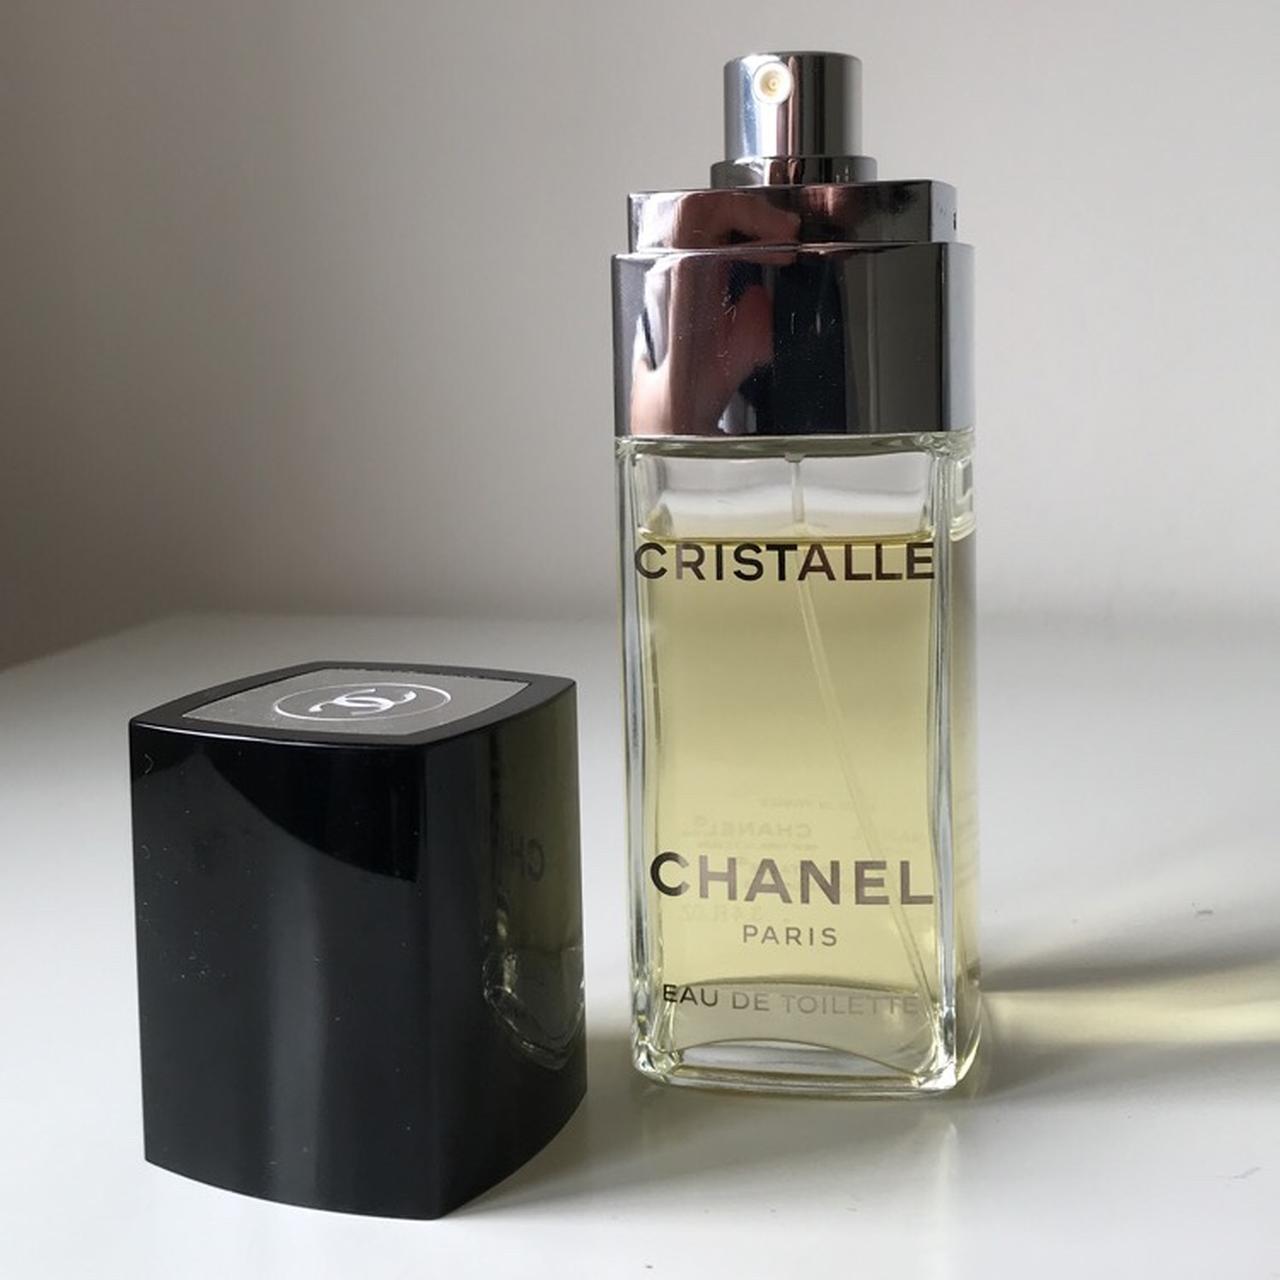 CHANEL CRISTALLE EAU DE PARFUM 4 ml Mini, Beauty